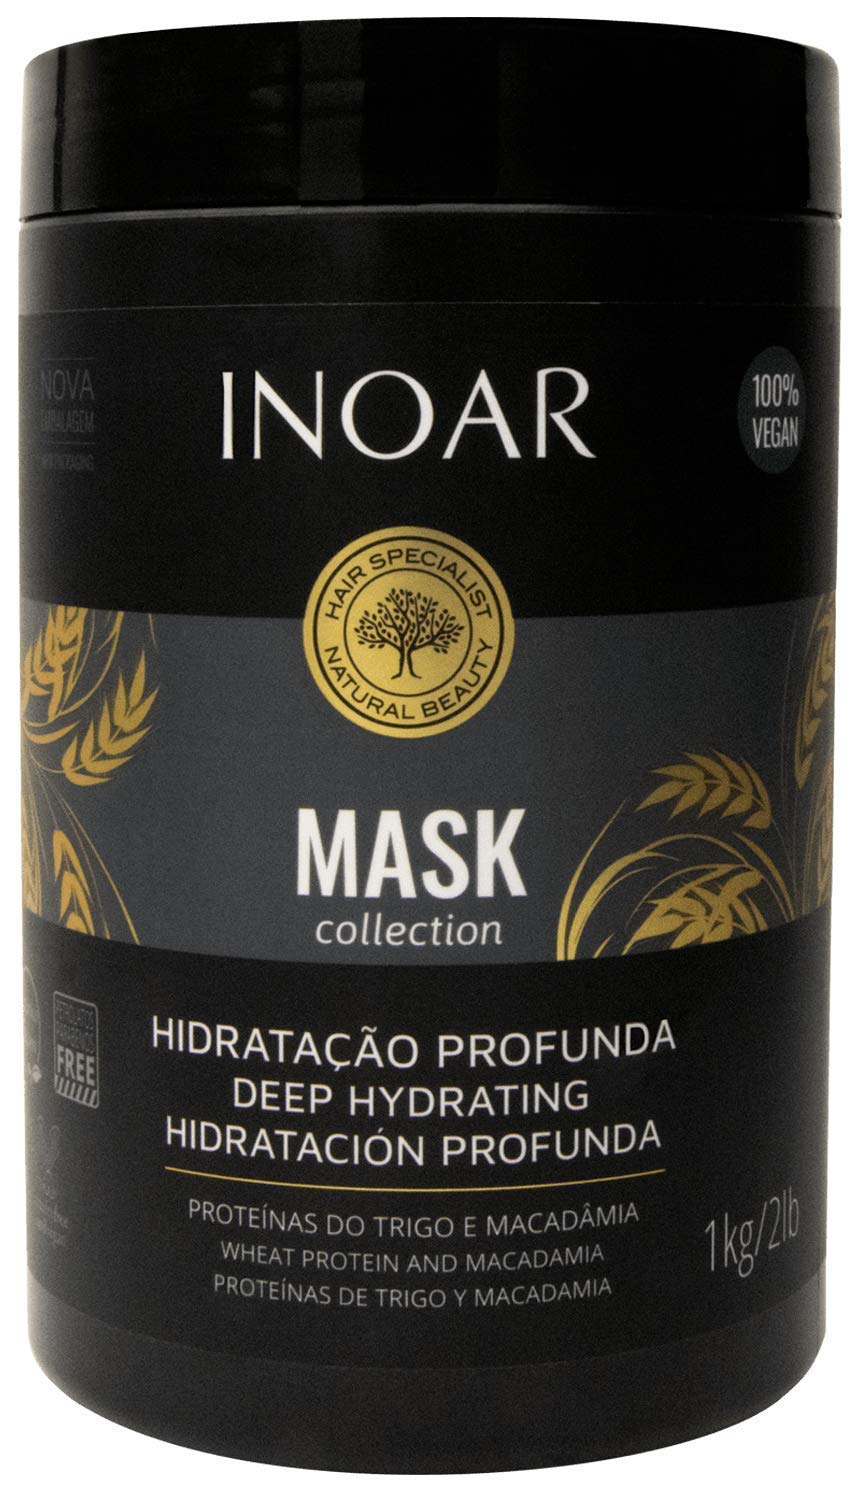 Máscara Hidratação Profunda Inoar Mask Collection 1L